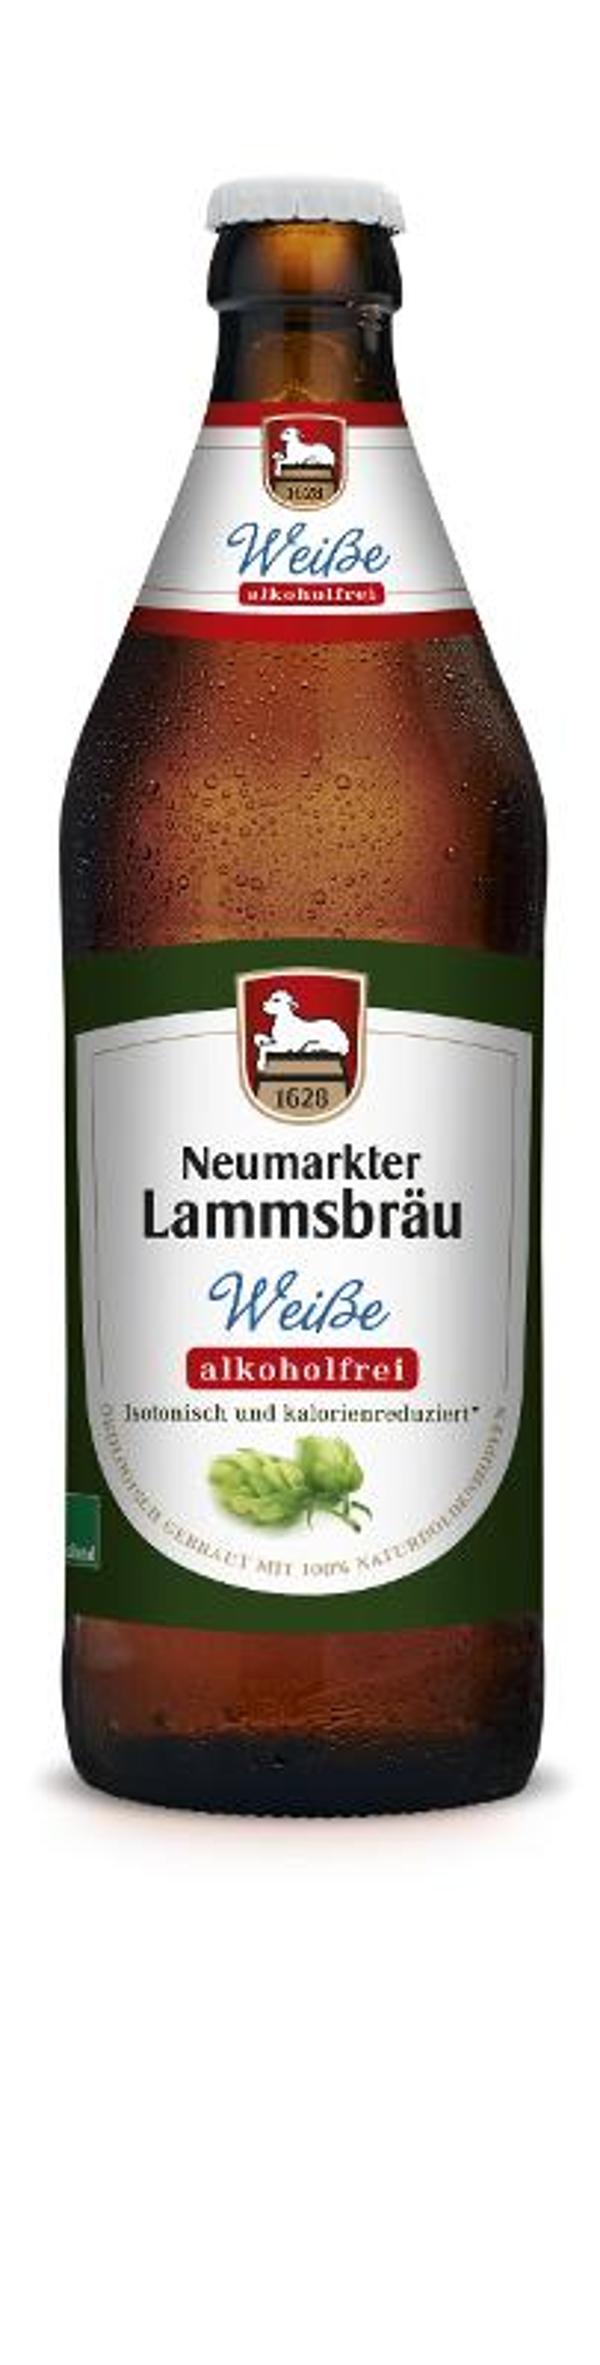 Produktfoto zu Lammsbräu Weiße alkoholfrei - 0,5l